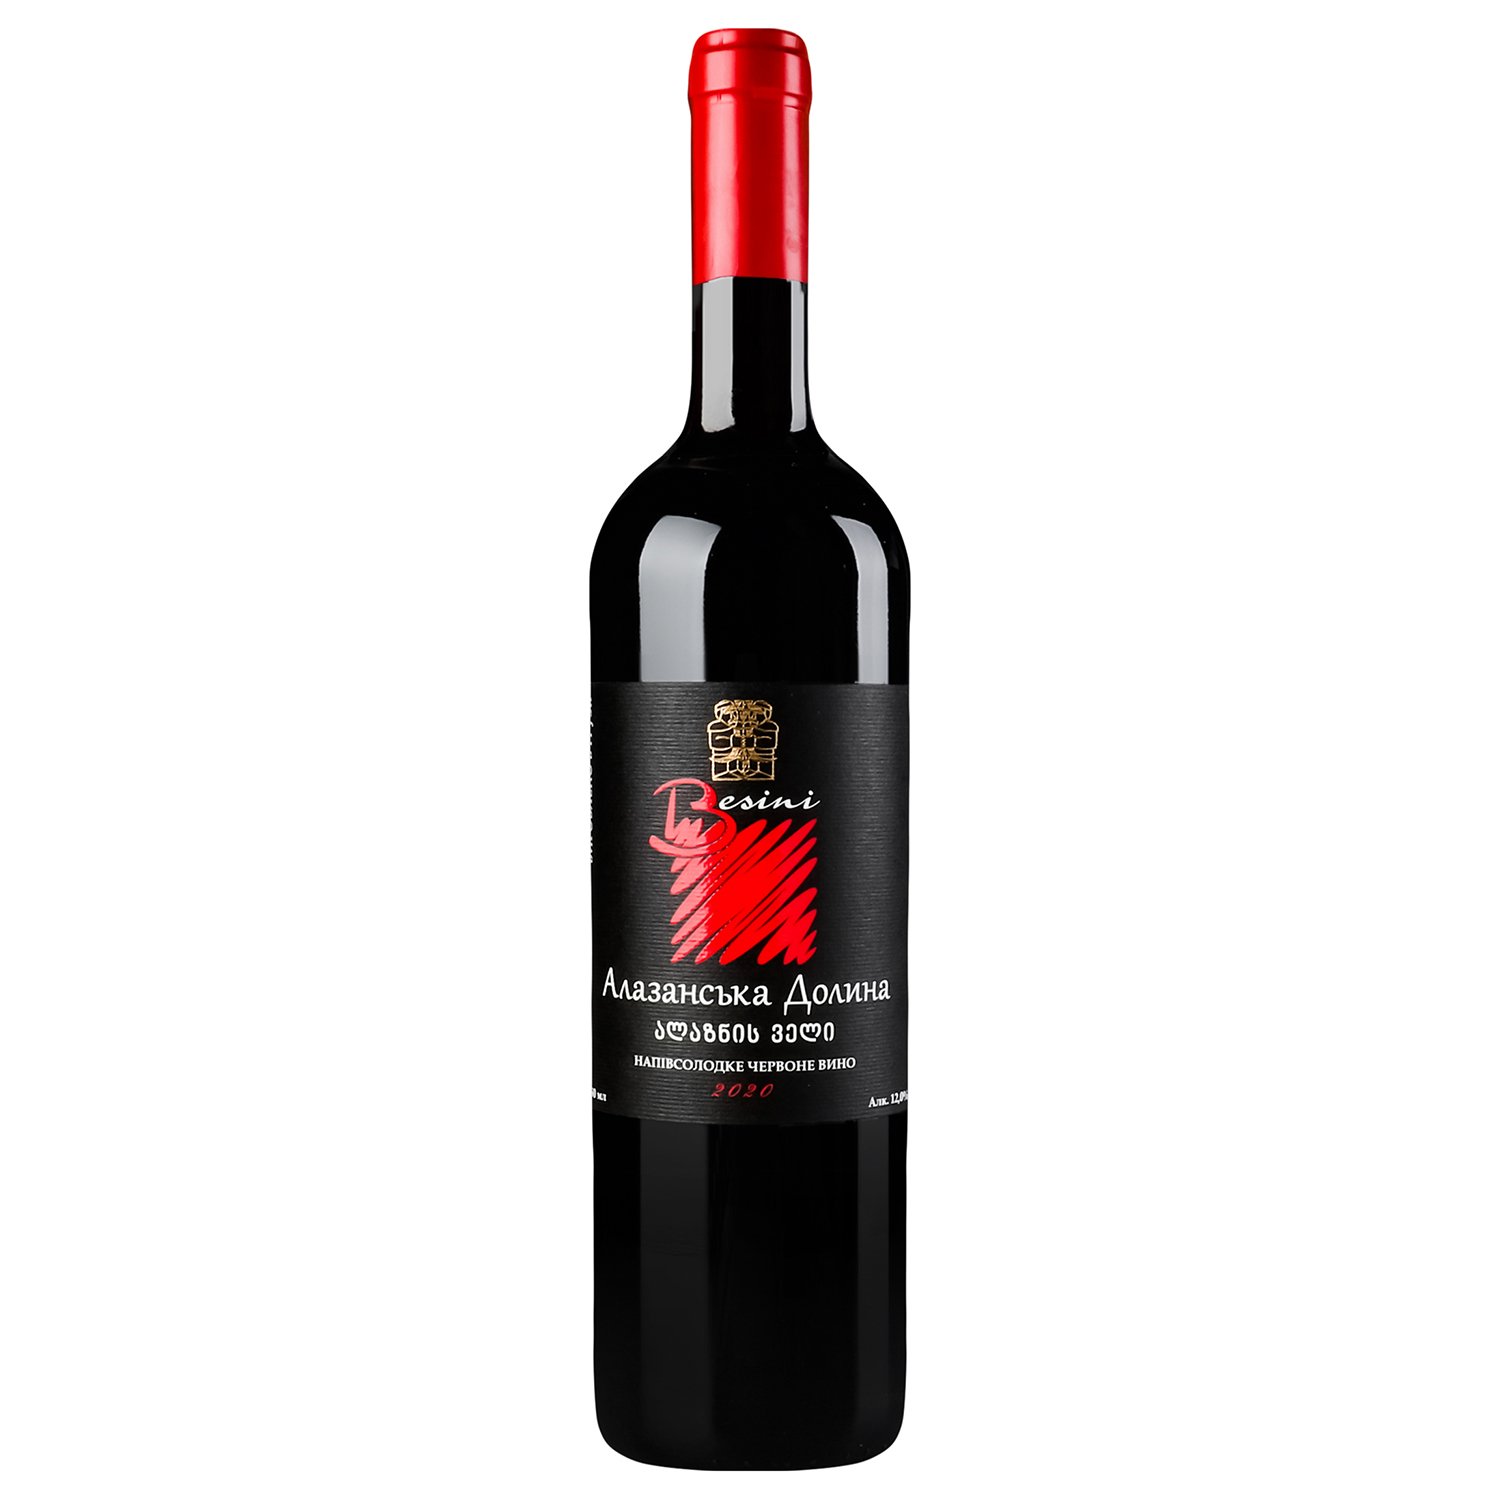 Вино Besini Alazani Valley, червоне, напівсолодке, 12%, 0,75 л (8000016900850) - фото 1